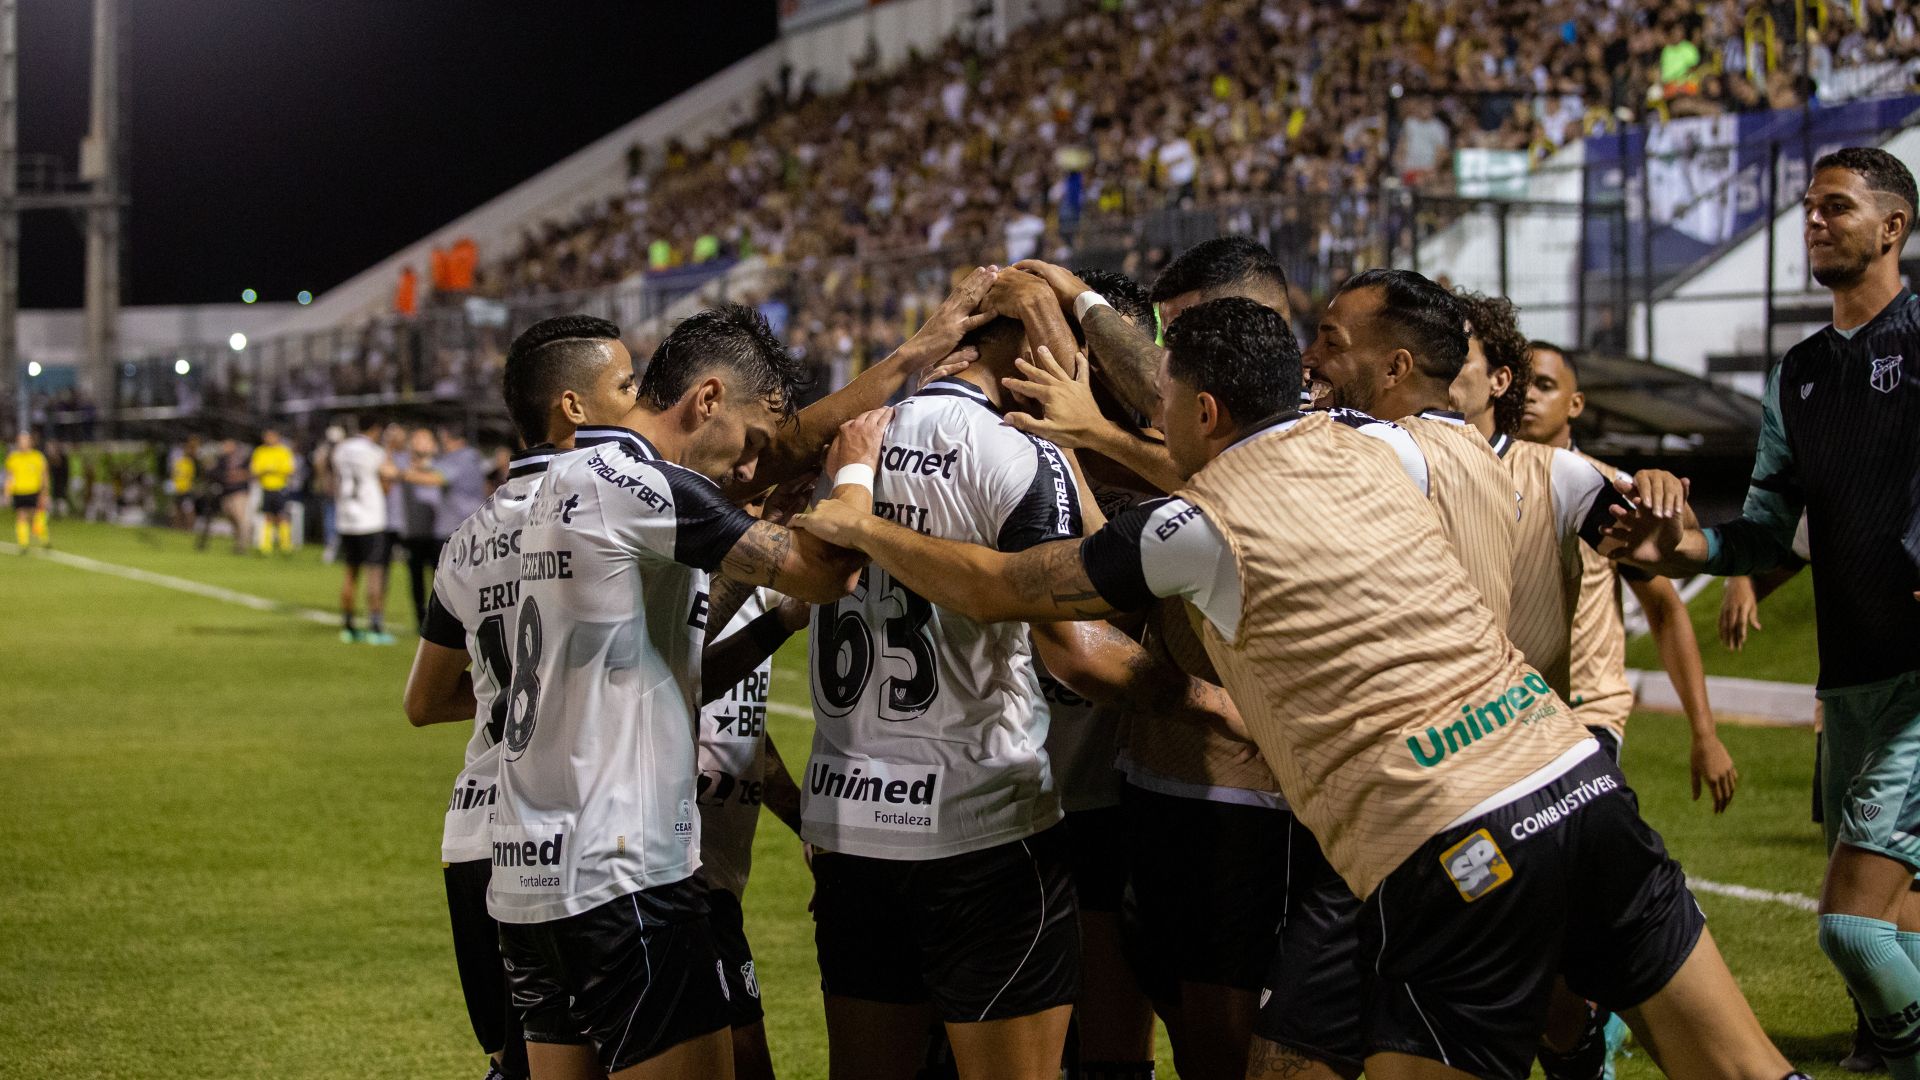 Ceará players celebrating victory against ABC (Credit: Felipe Santos / SC Ceará)